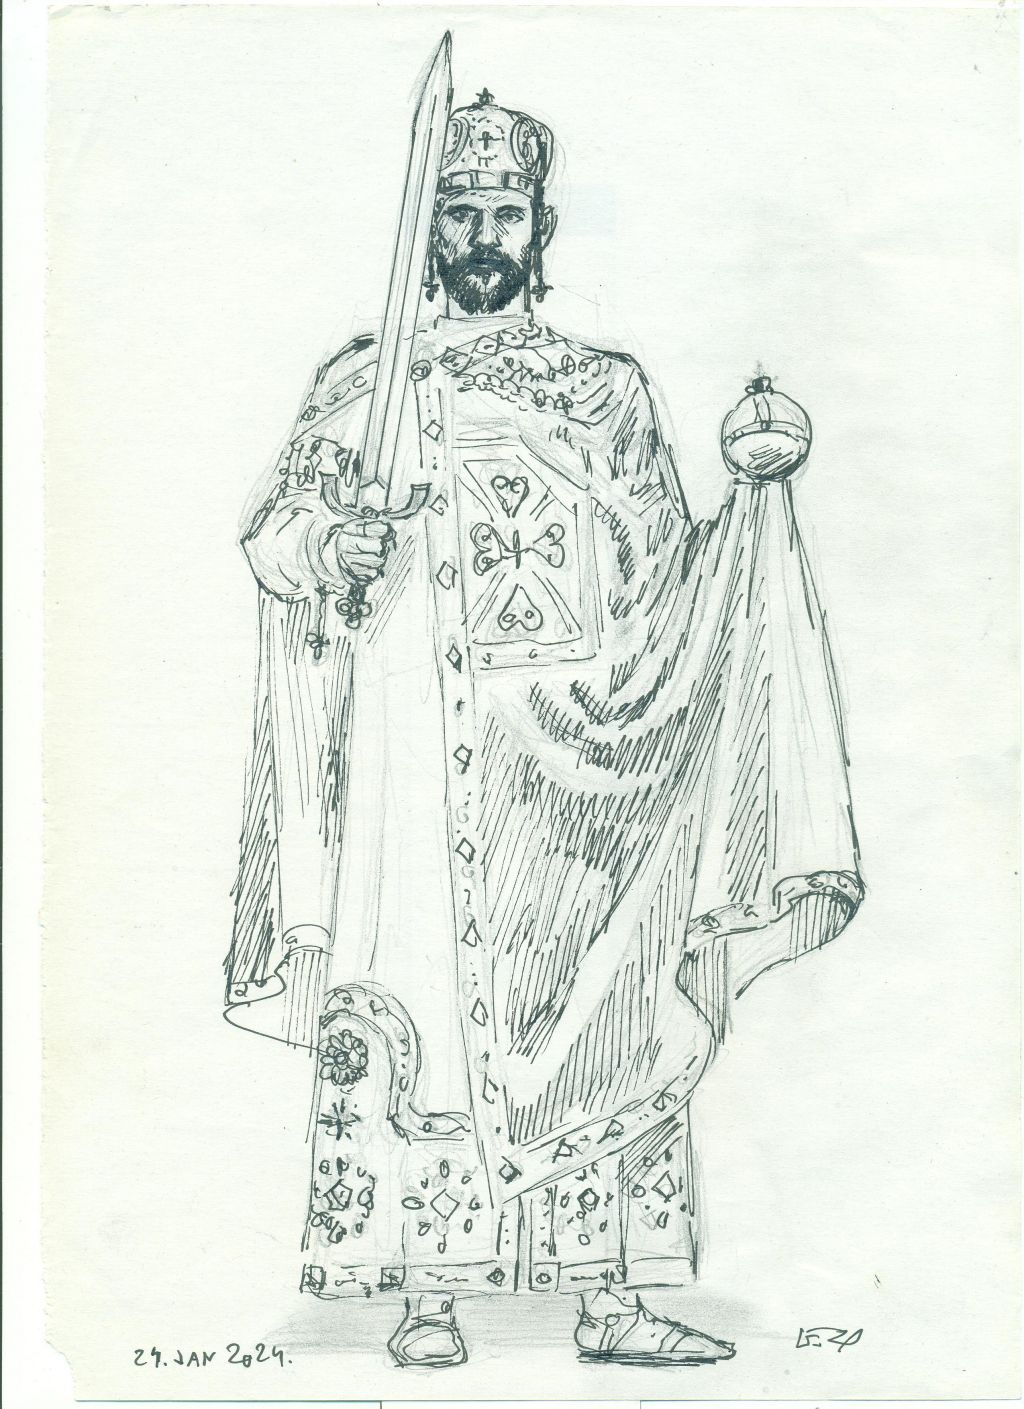 Car Dušan - još jedan od crteža Geze Šeteta dostavljenih eKapiji